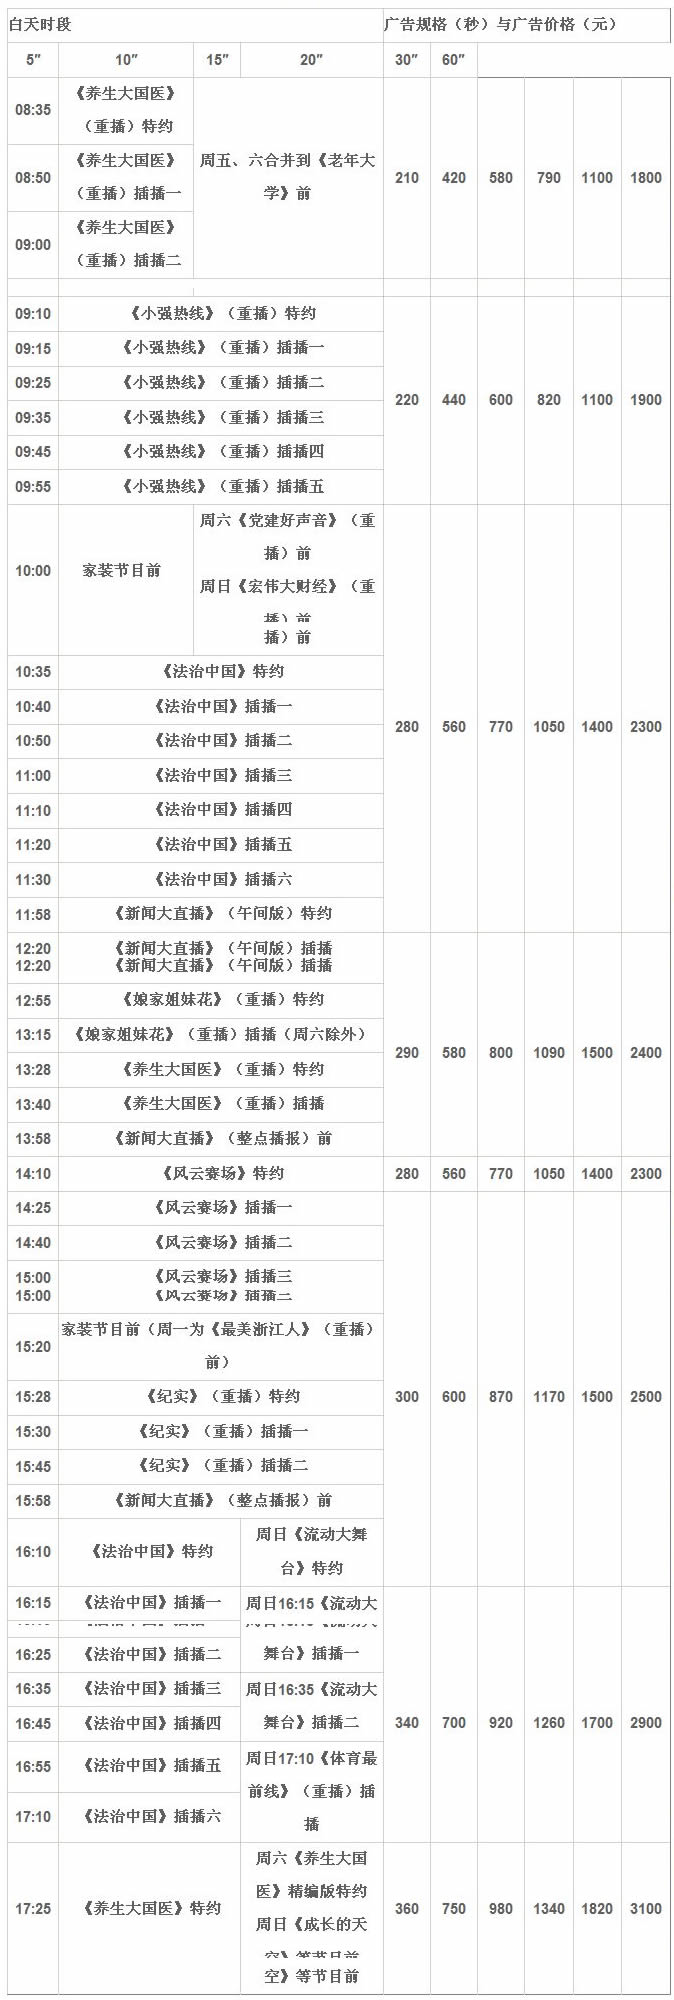 浙江广播电视集团公共·新闻频道（7频道）2018年白天广告价目表
